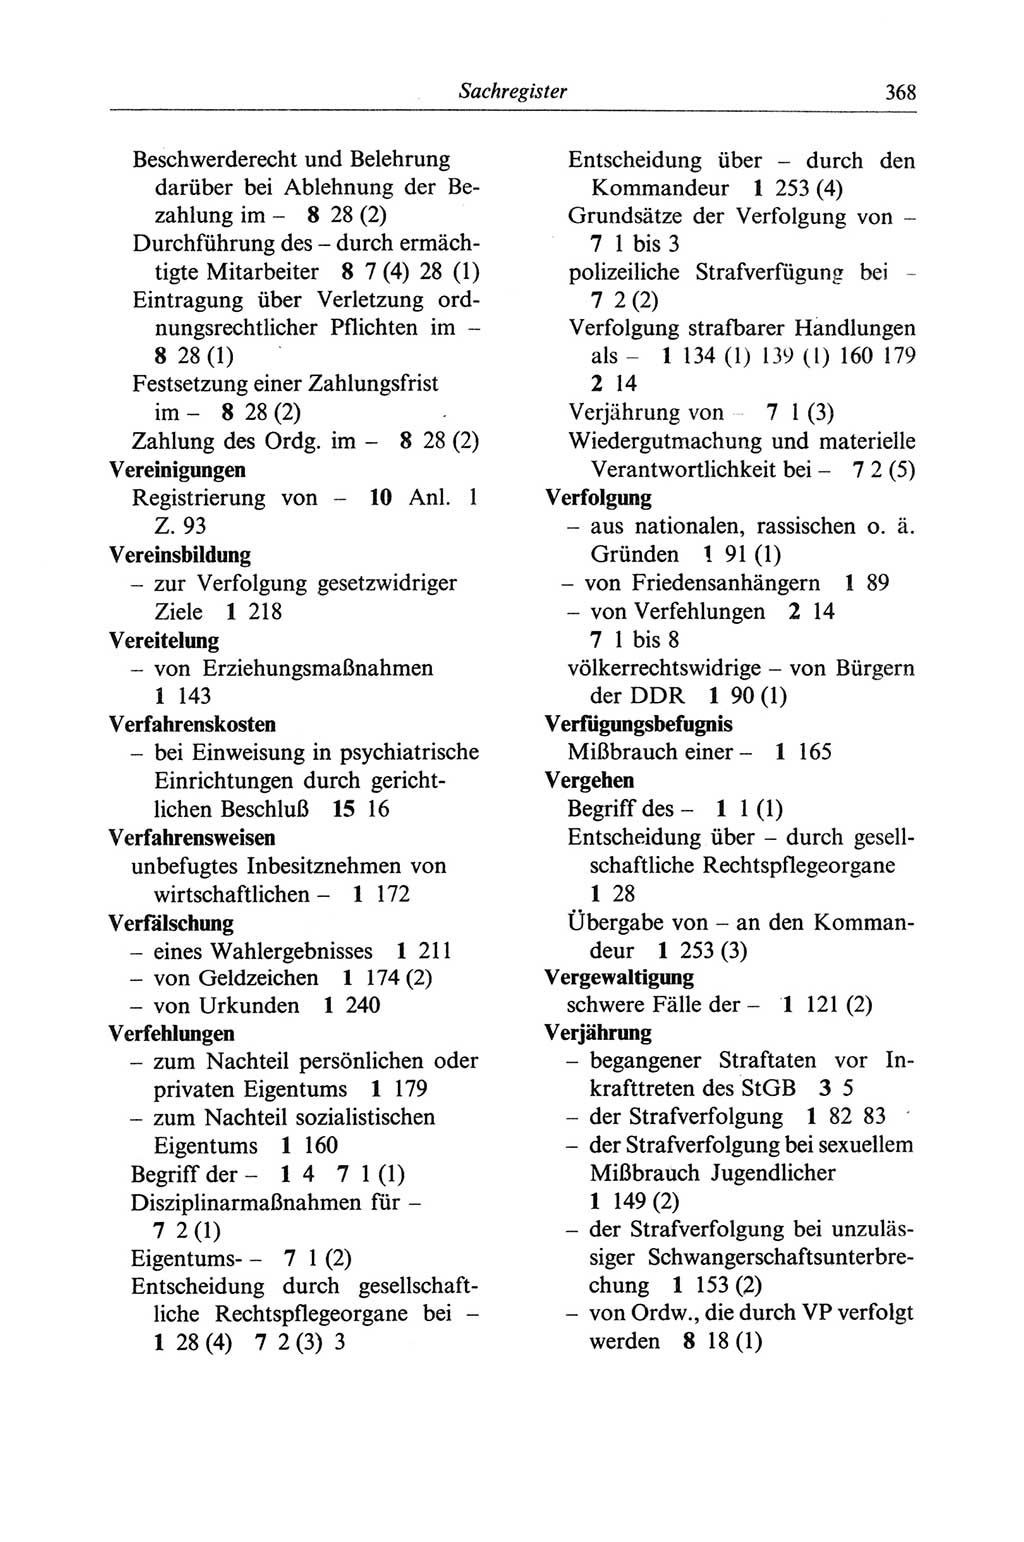 Strafgesetzbuch (StGB) der Deutschen Demokratischen Republik (DDR) und angrenzende Gesetze und Bestimmungen 1968, Seite 368 (StGB Ges. Best. DDR 1968, S. 368)